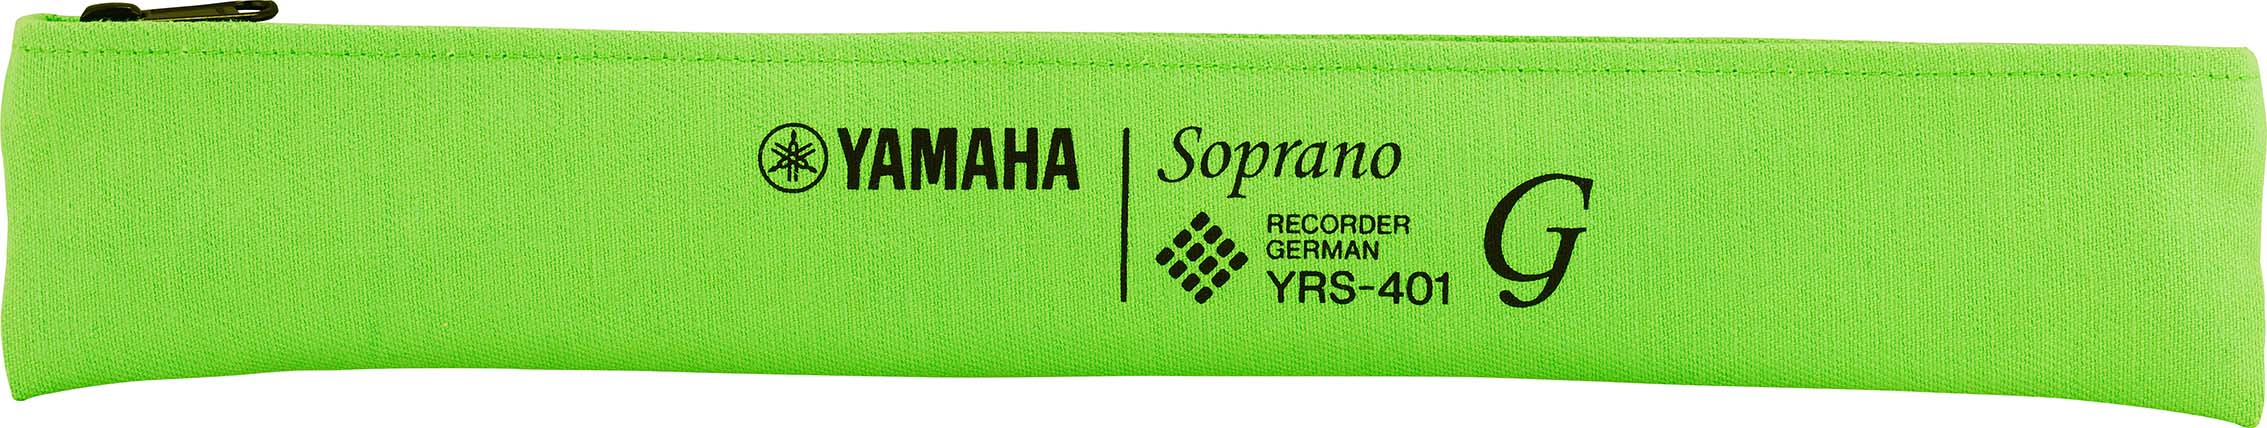 Yamaha Soprano Recorder - YRS 401